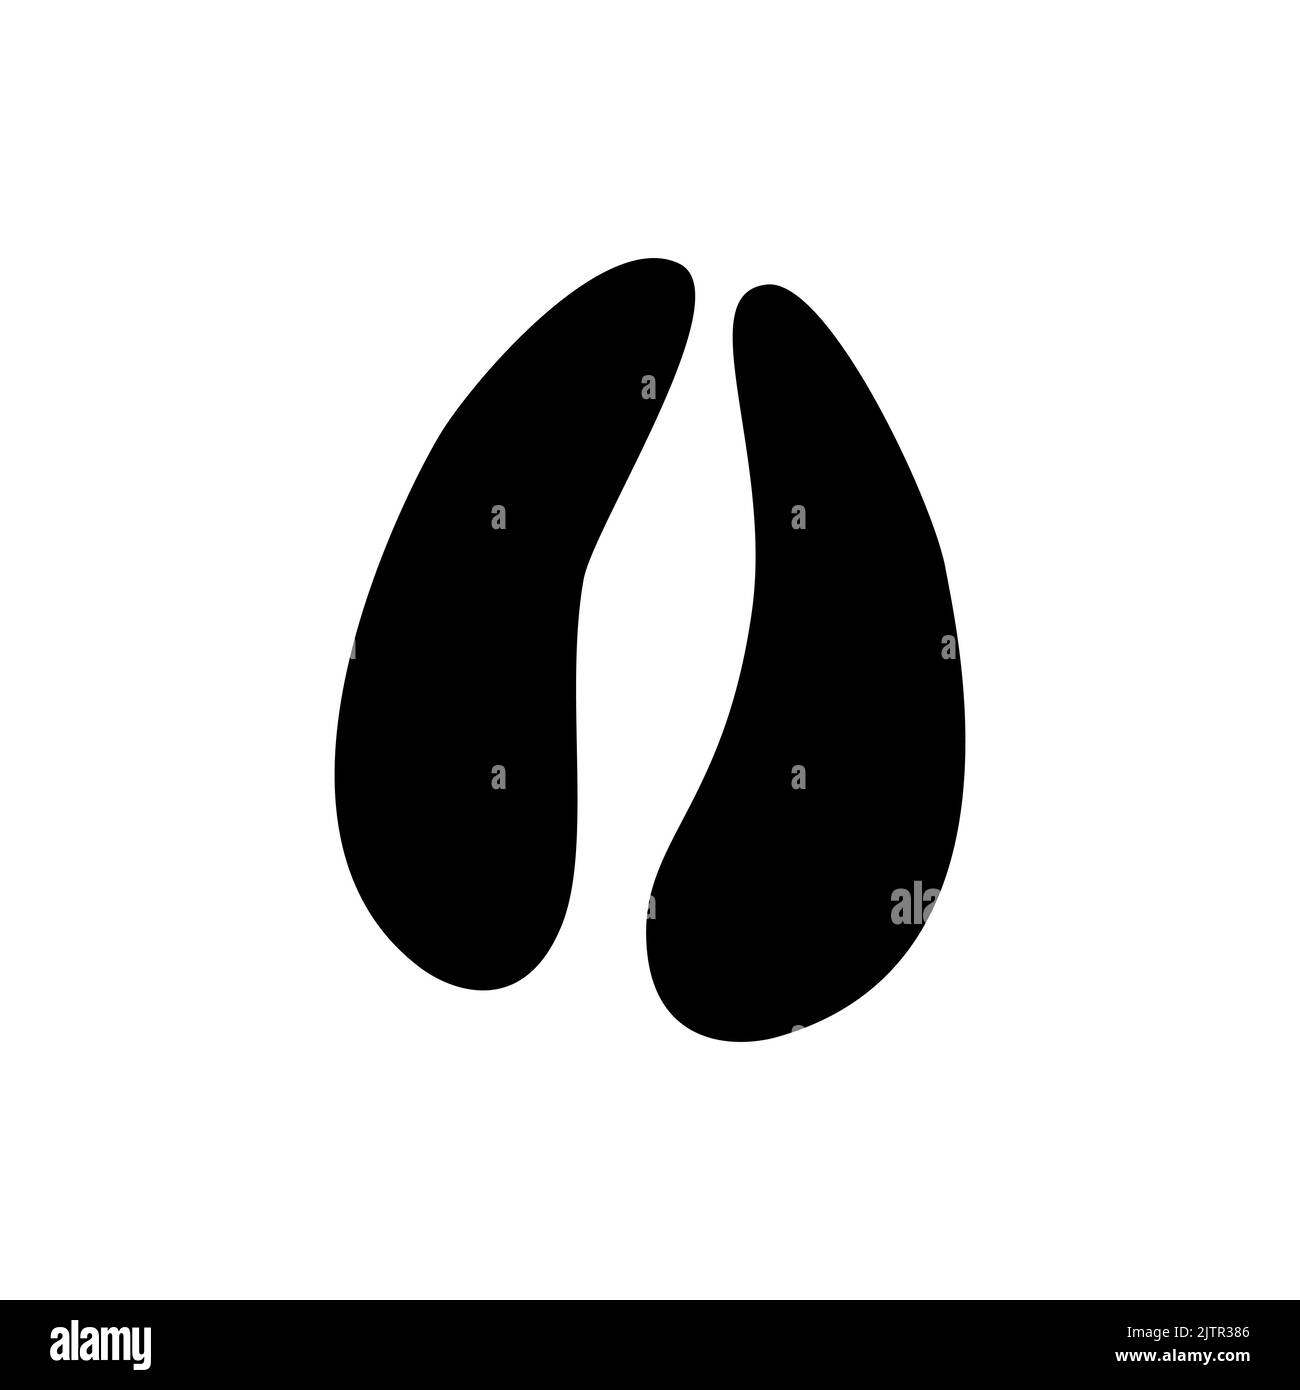 Elch Elch Tier Fußabdrücke isoliert schwarze Silhouette Symbol. Vector Wildtiere Jagd Sport Emblem, Spur nach dem Spaziergang auf dem Boden im Schnee oder Schlamm. Rentier- oder Elchhufepisten, Wildgehege Stock Vektor